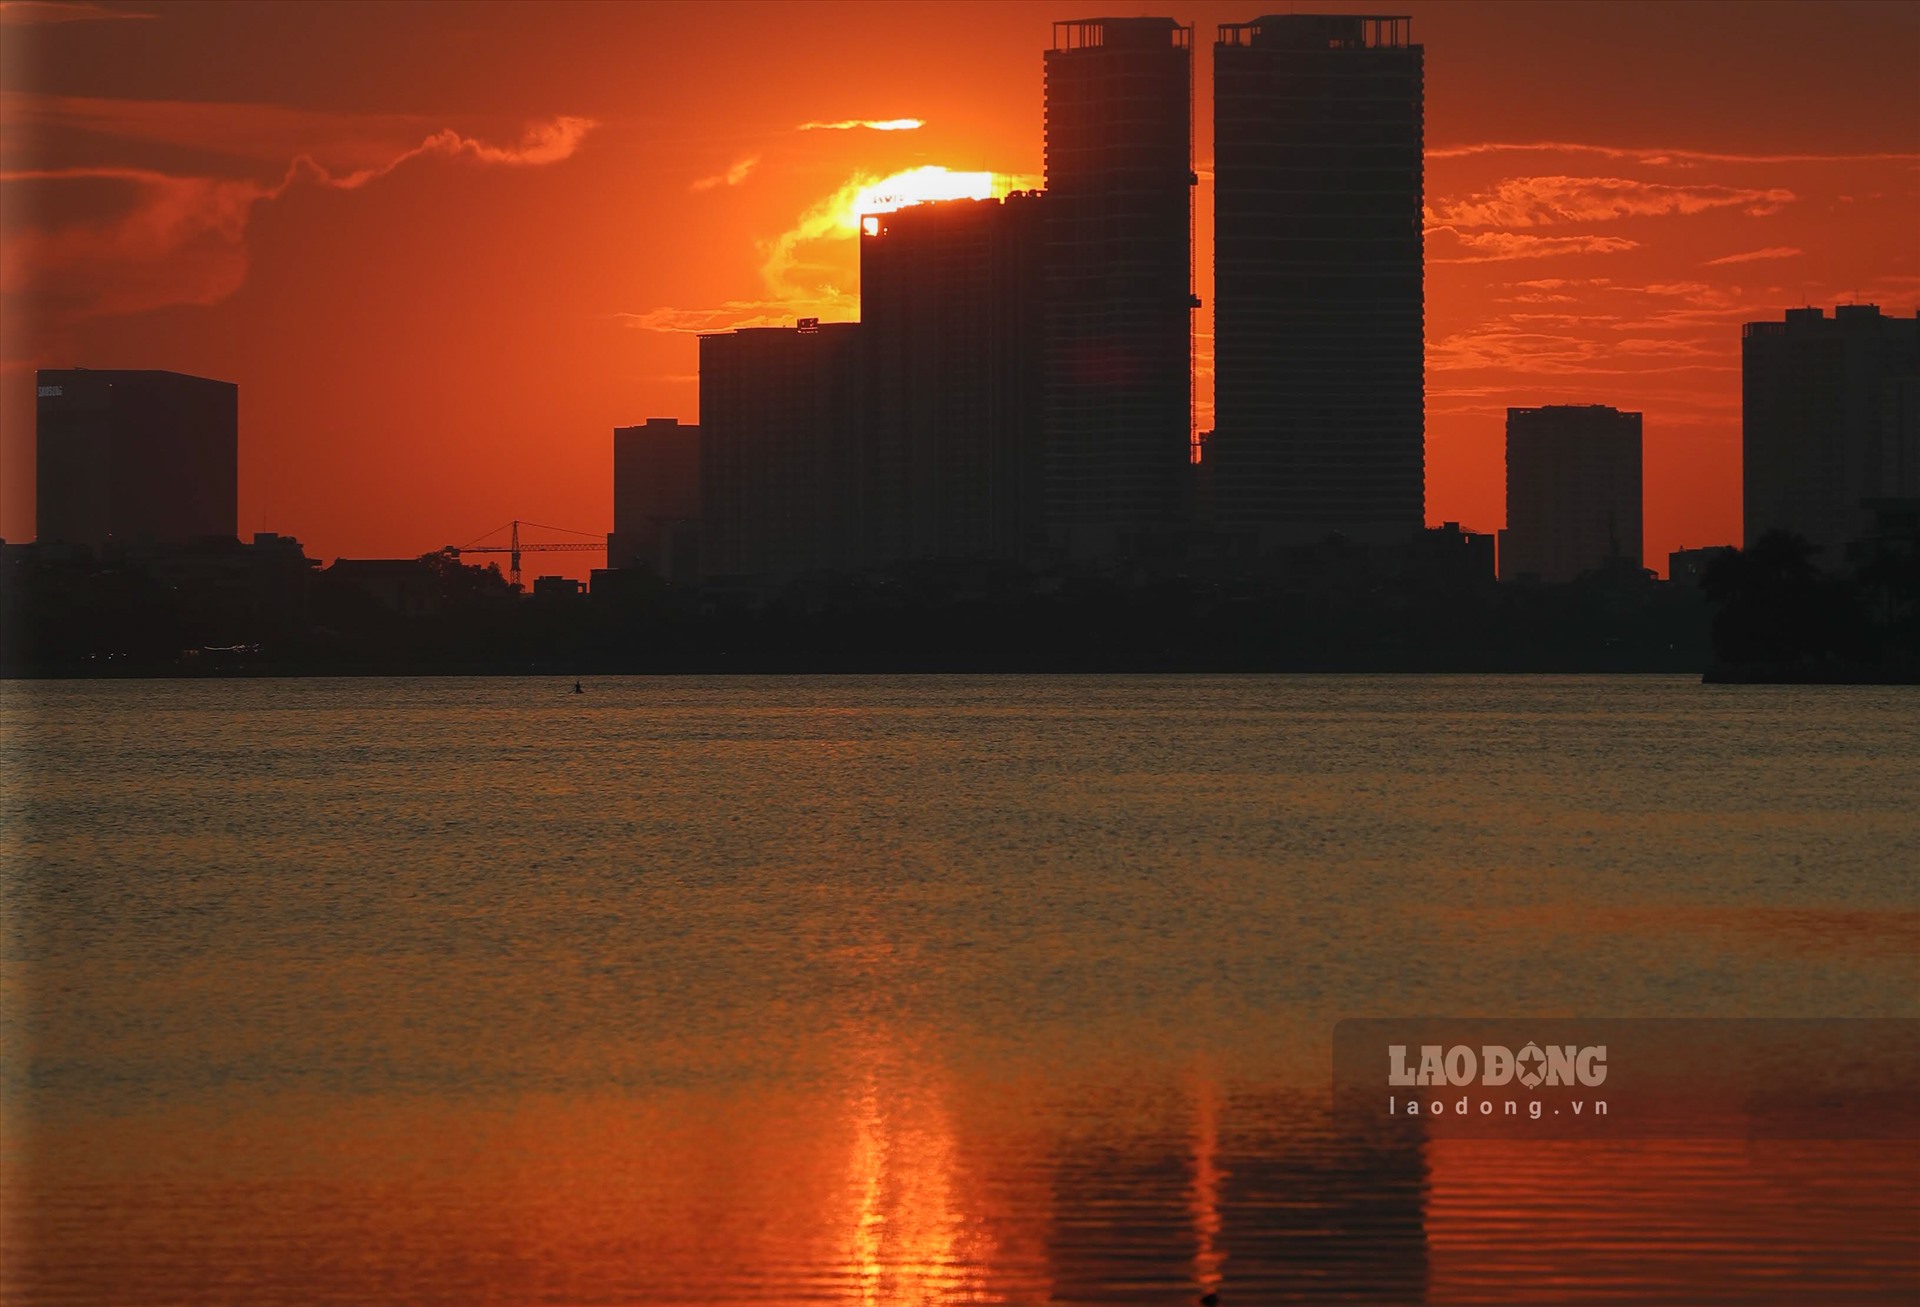 Mặt trời khuất sau các tòa nhà, đường chân trời cũng trở nên đỏ rực đổ bóng xuống mặt hồ.